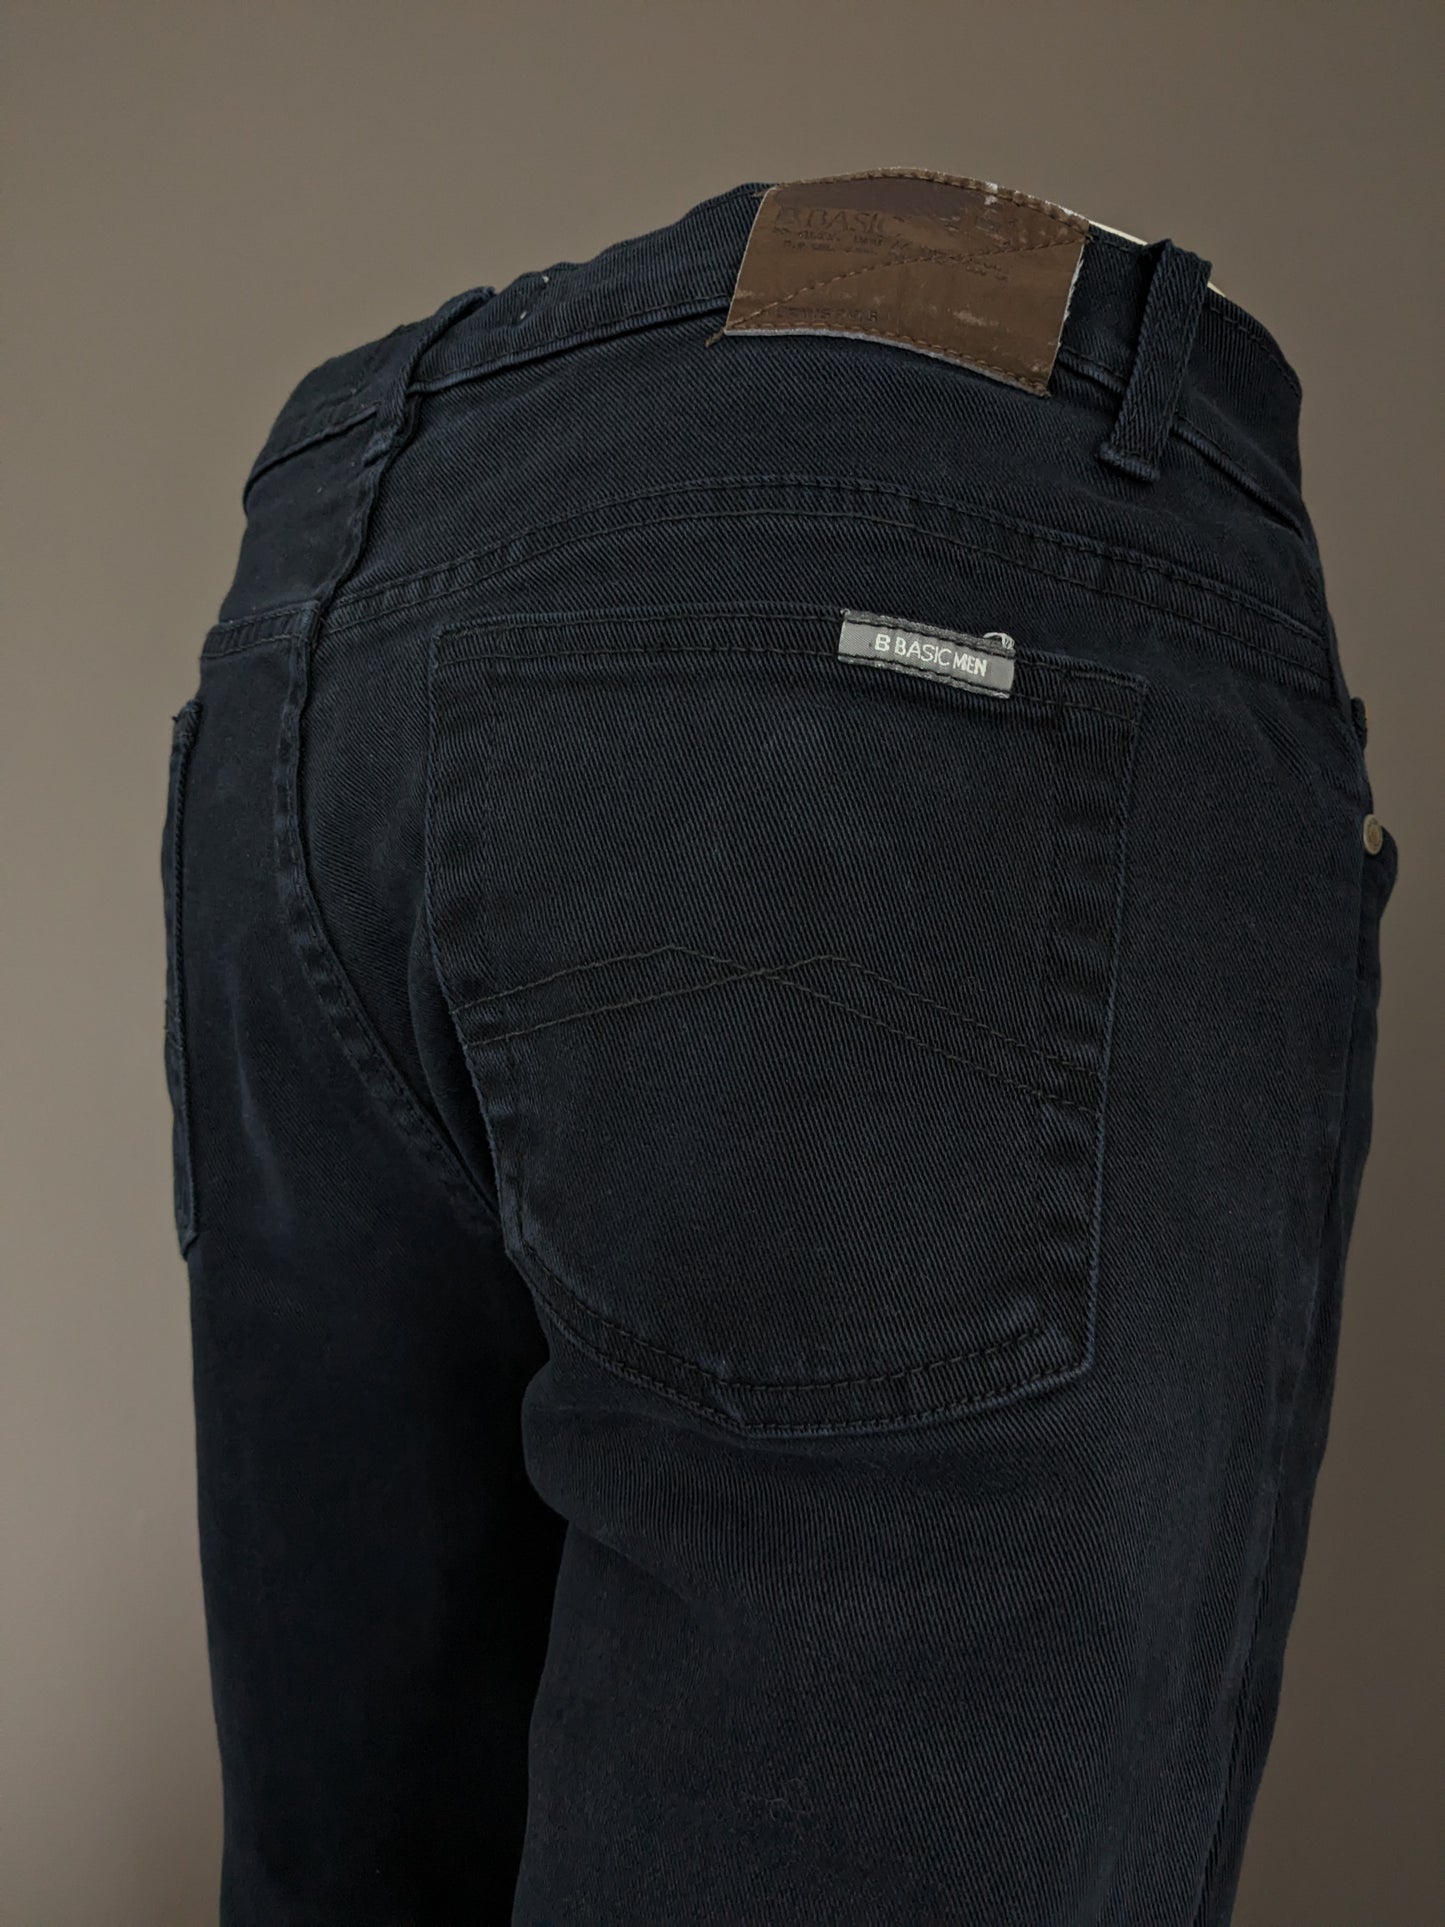 B Basic por Brams Paris Jeans. Color negro. Tamaño W34 - L34. Conflexión de comodidad. estirar.